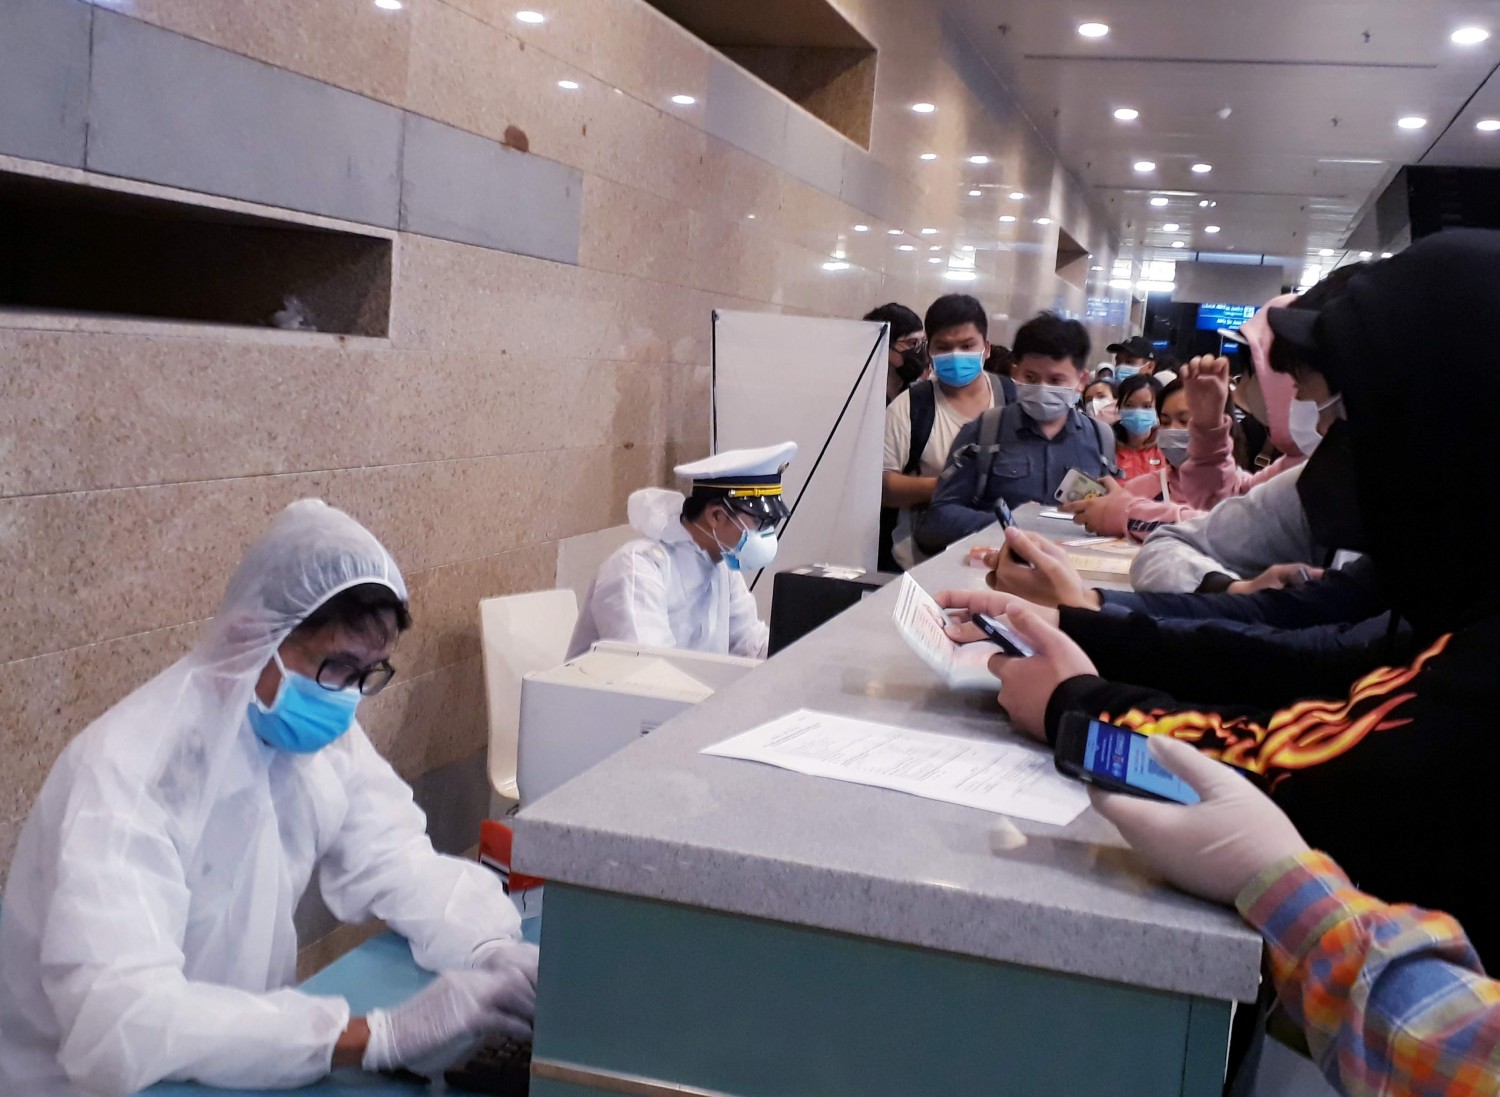 Cán bộ Khoa Phòng chống bệnh truyền nhiễm - kiểm dịch y tế quốc tế hướng dẫn hành khách nhập cảnh khai báo y tế tại Cảng Hàng không quốc tế Cần Thơ